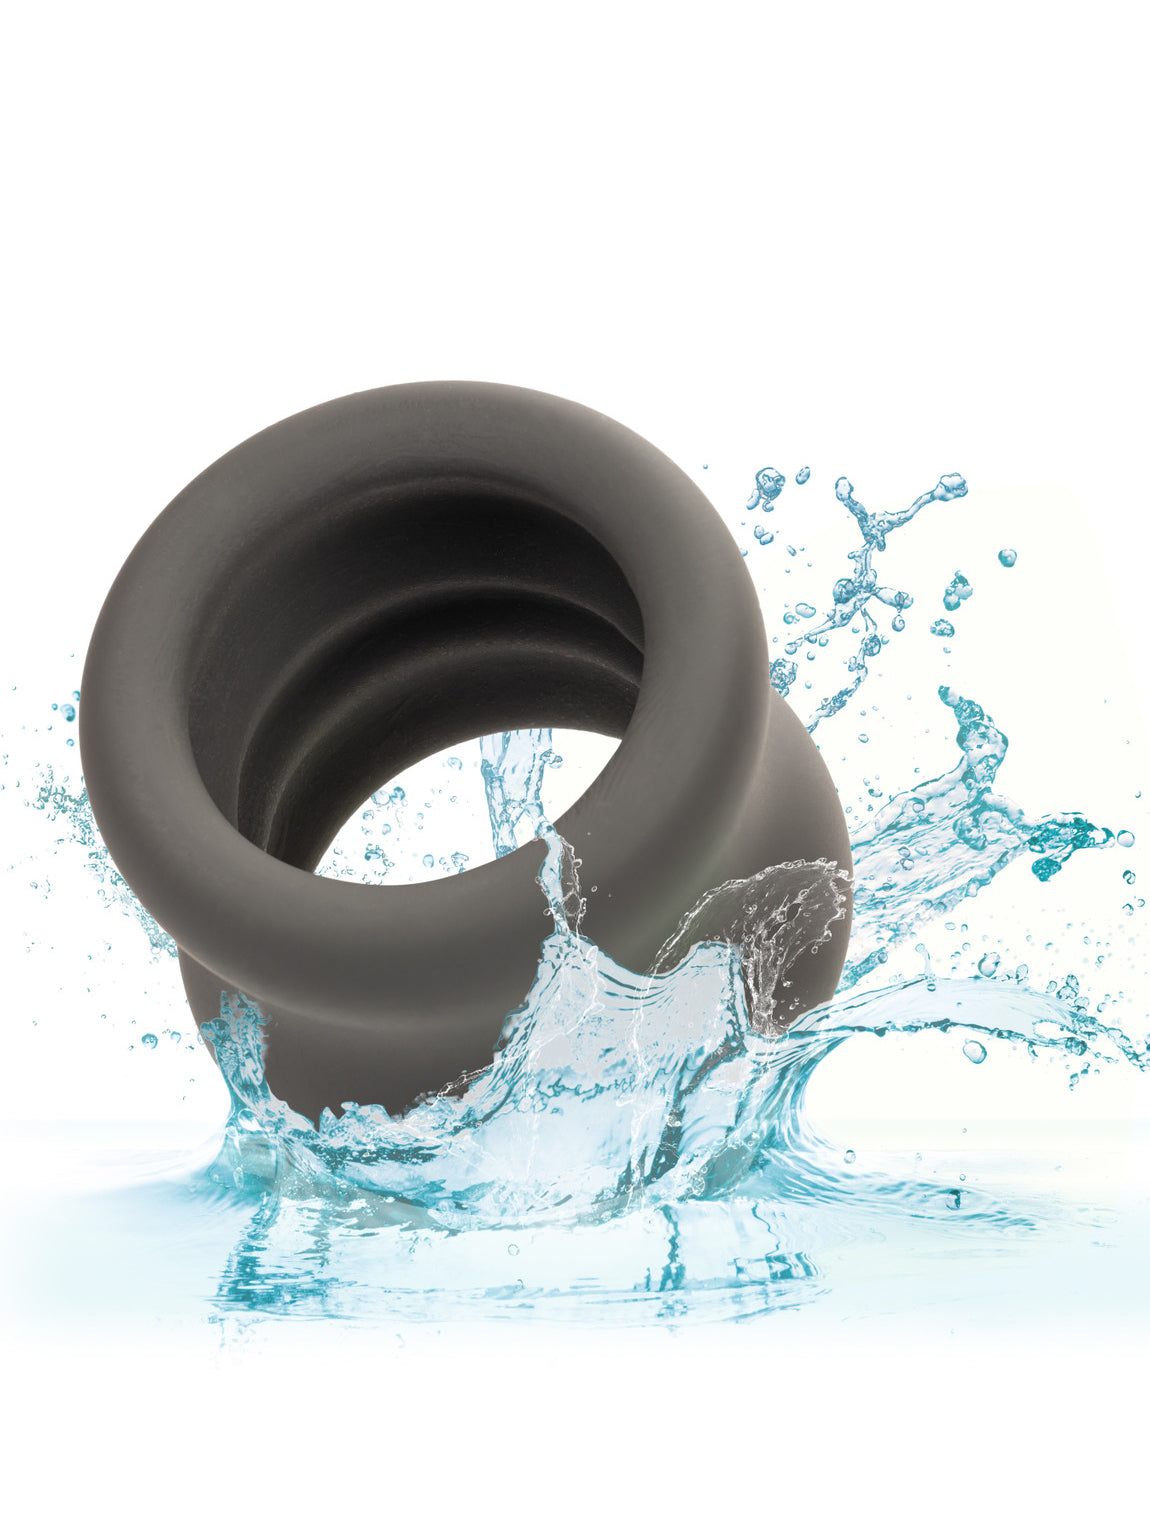 CalExotics - Alpha™ Liquid Silicone Scrotum Ring